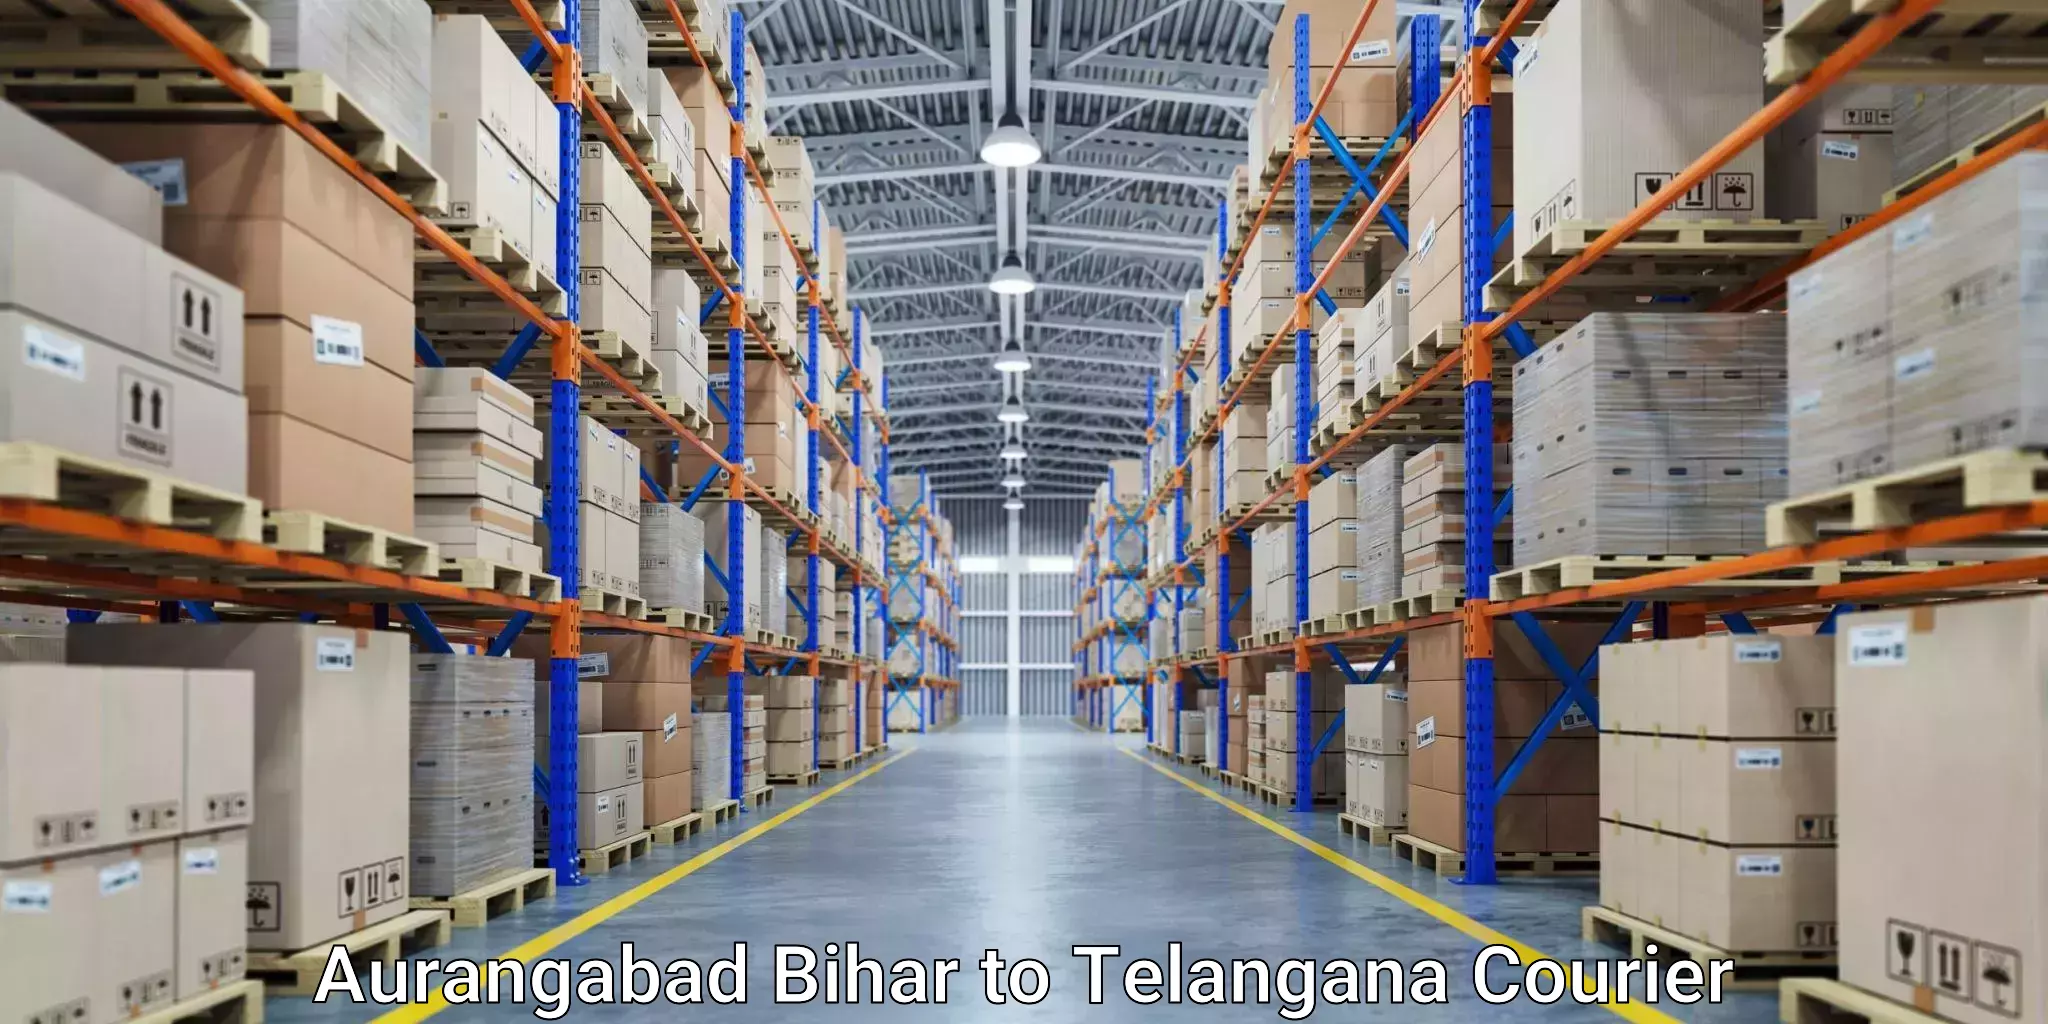 Ground shipping Aurangabad Bihar to Telangana